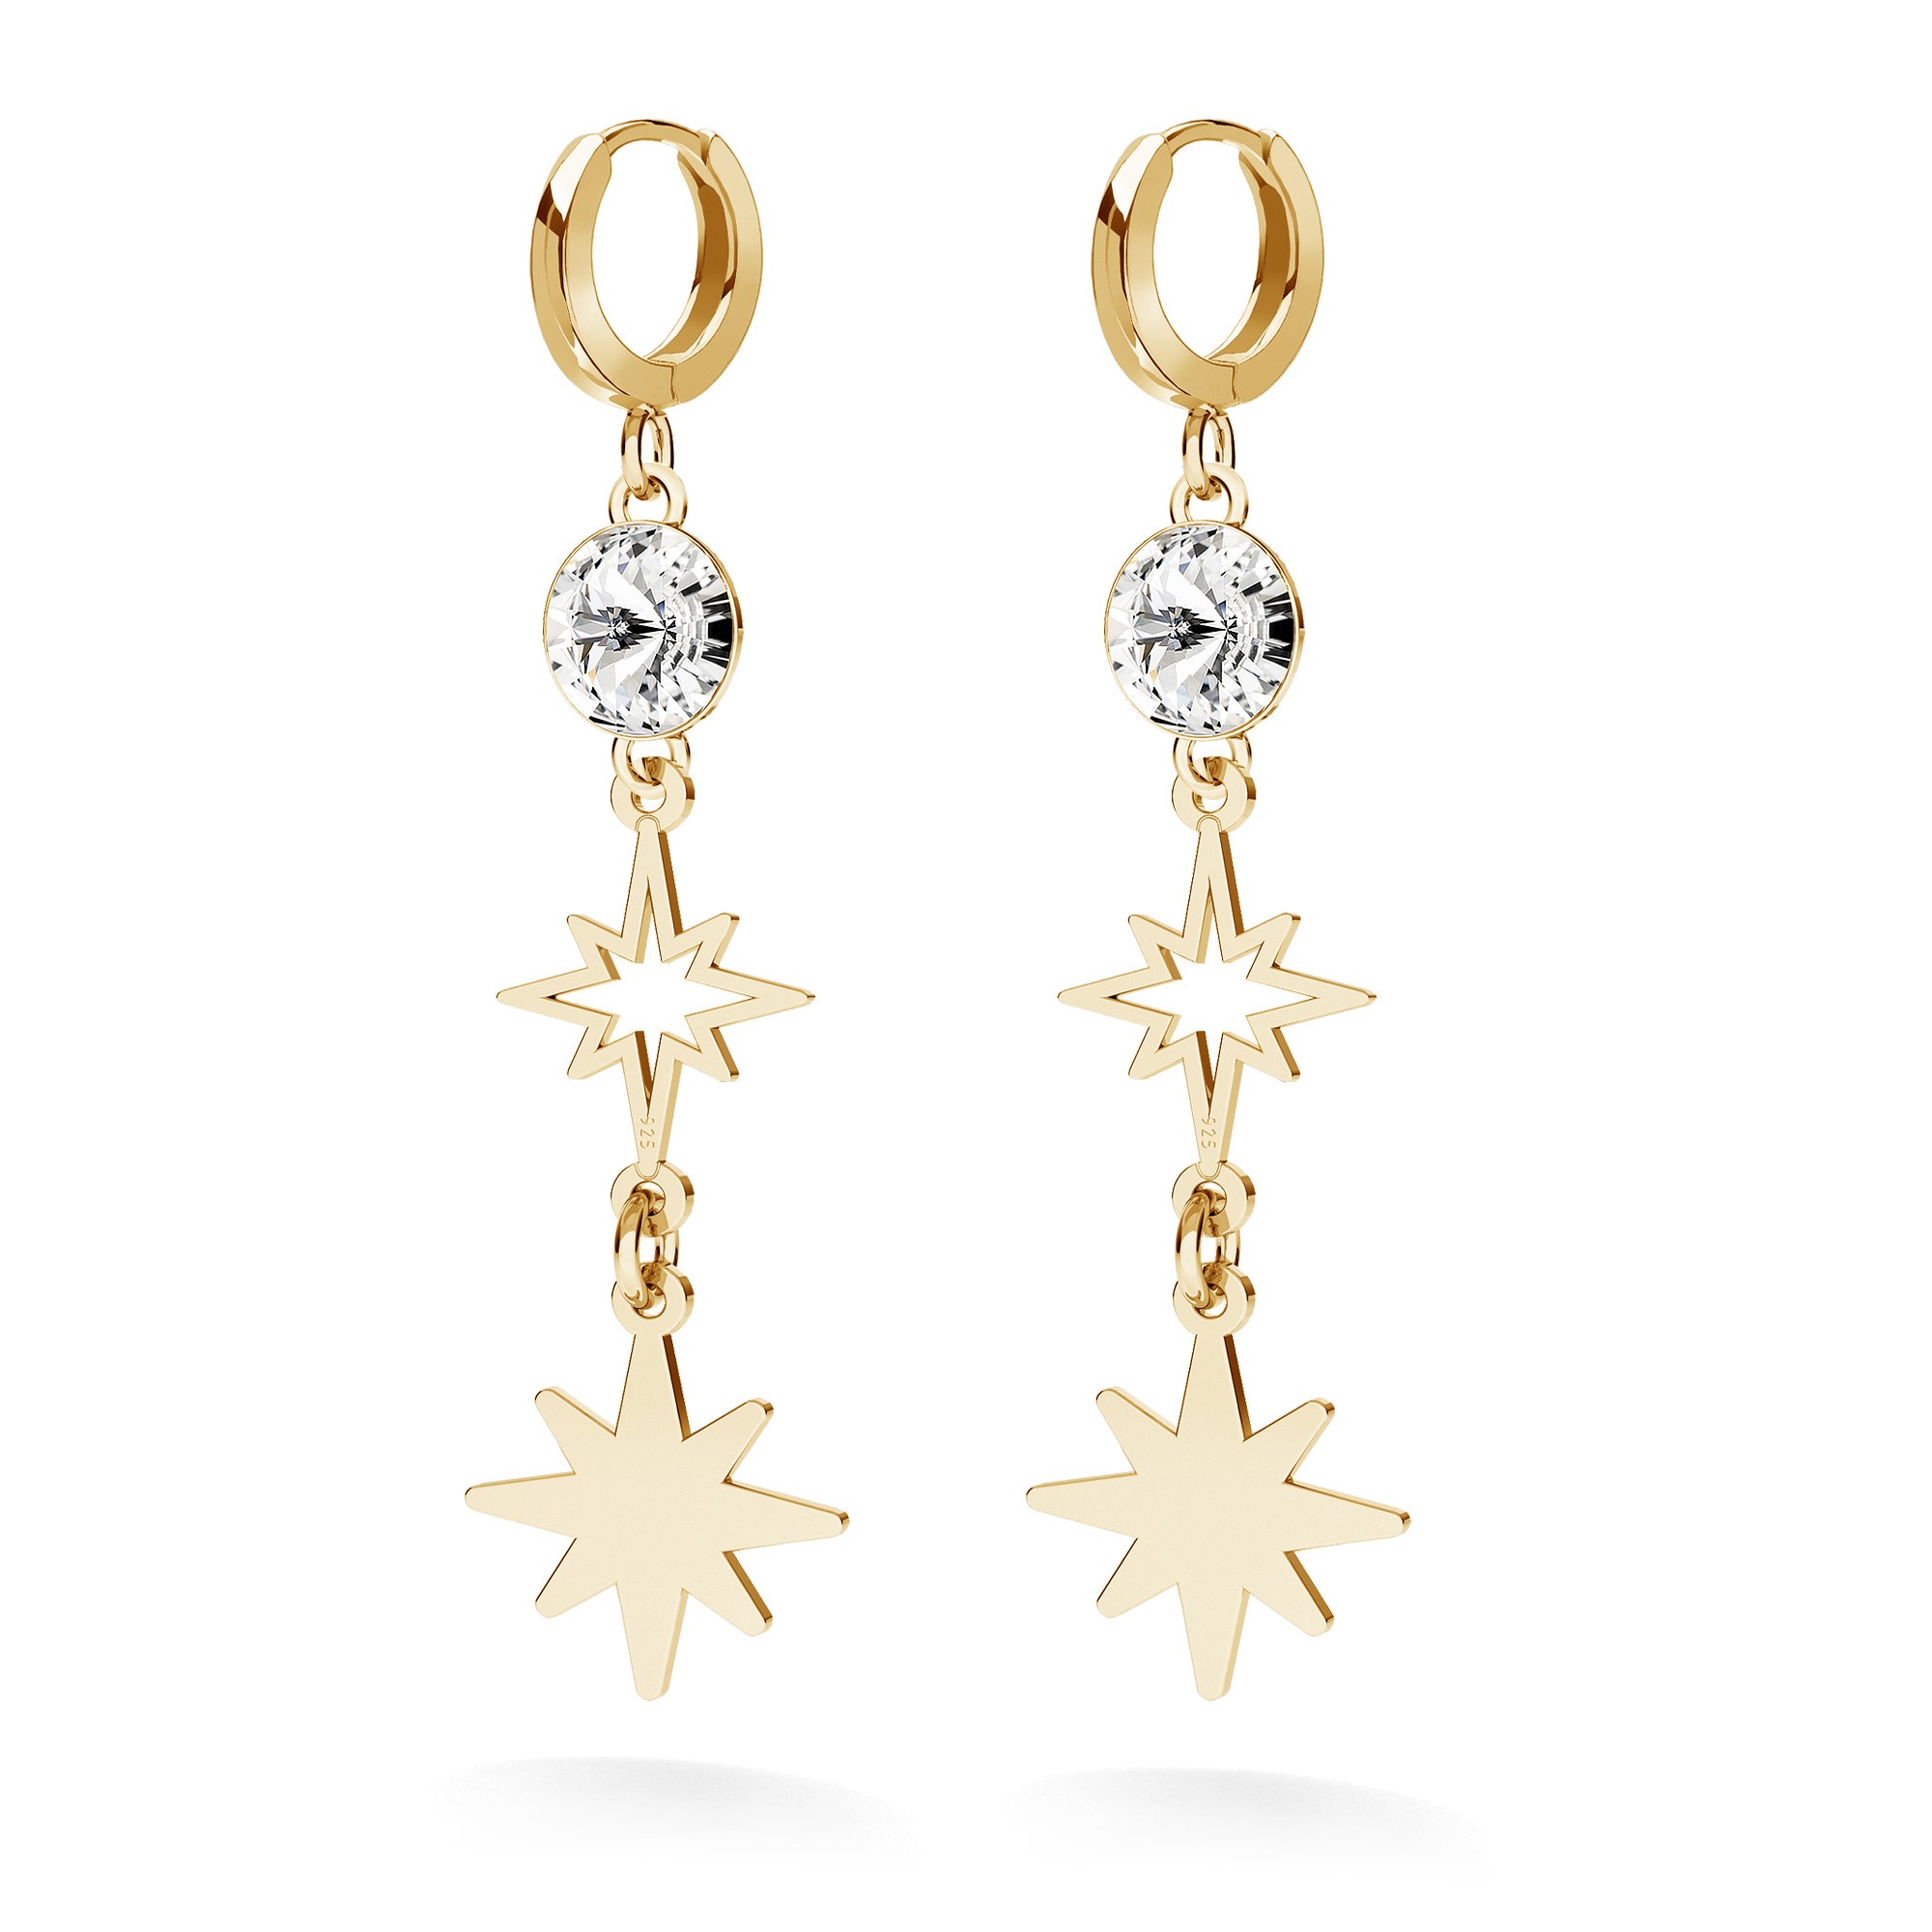 STAR earrings sterling silver 925